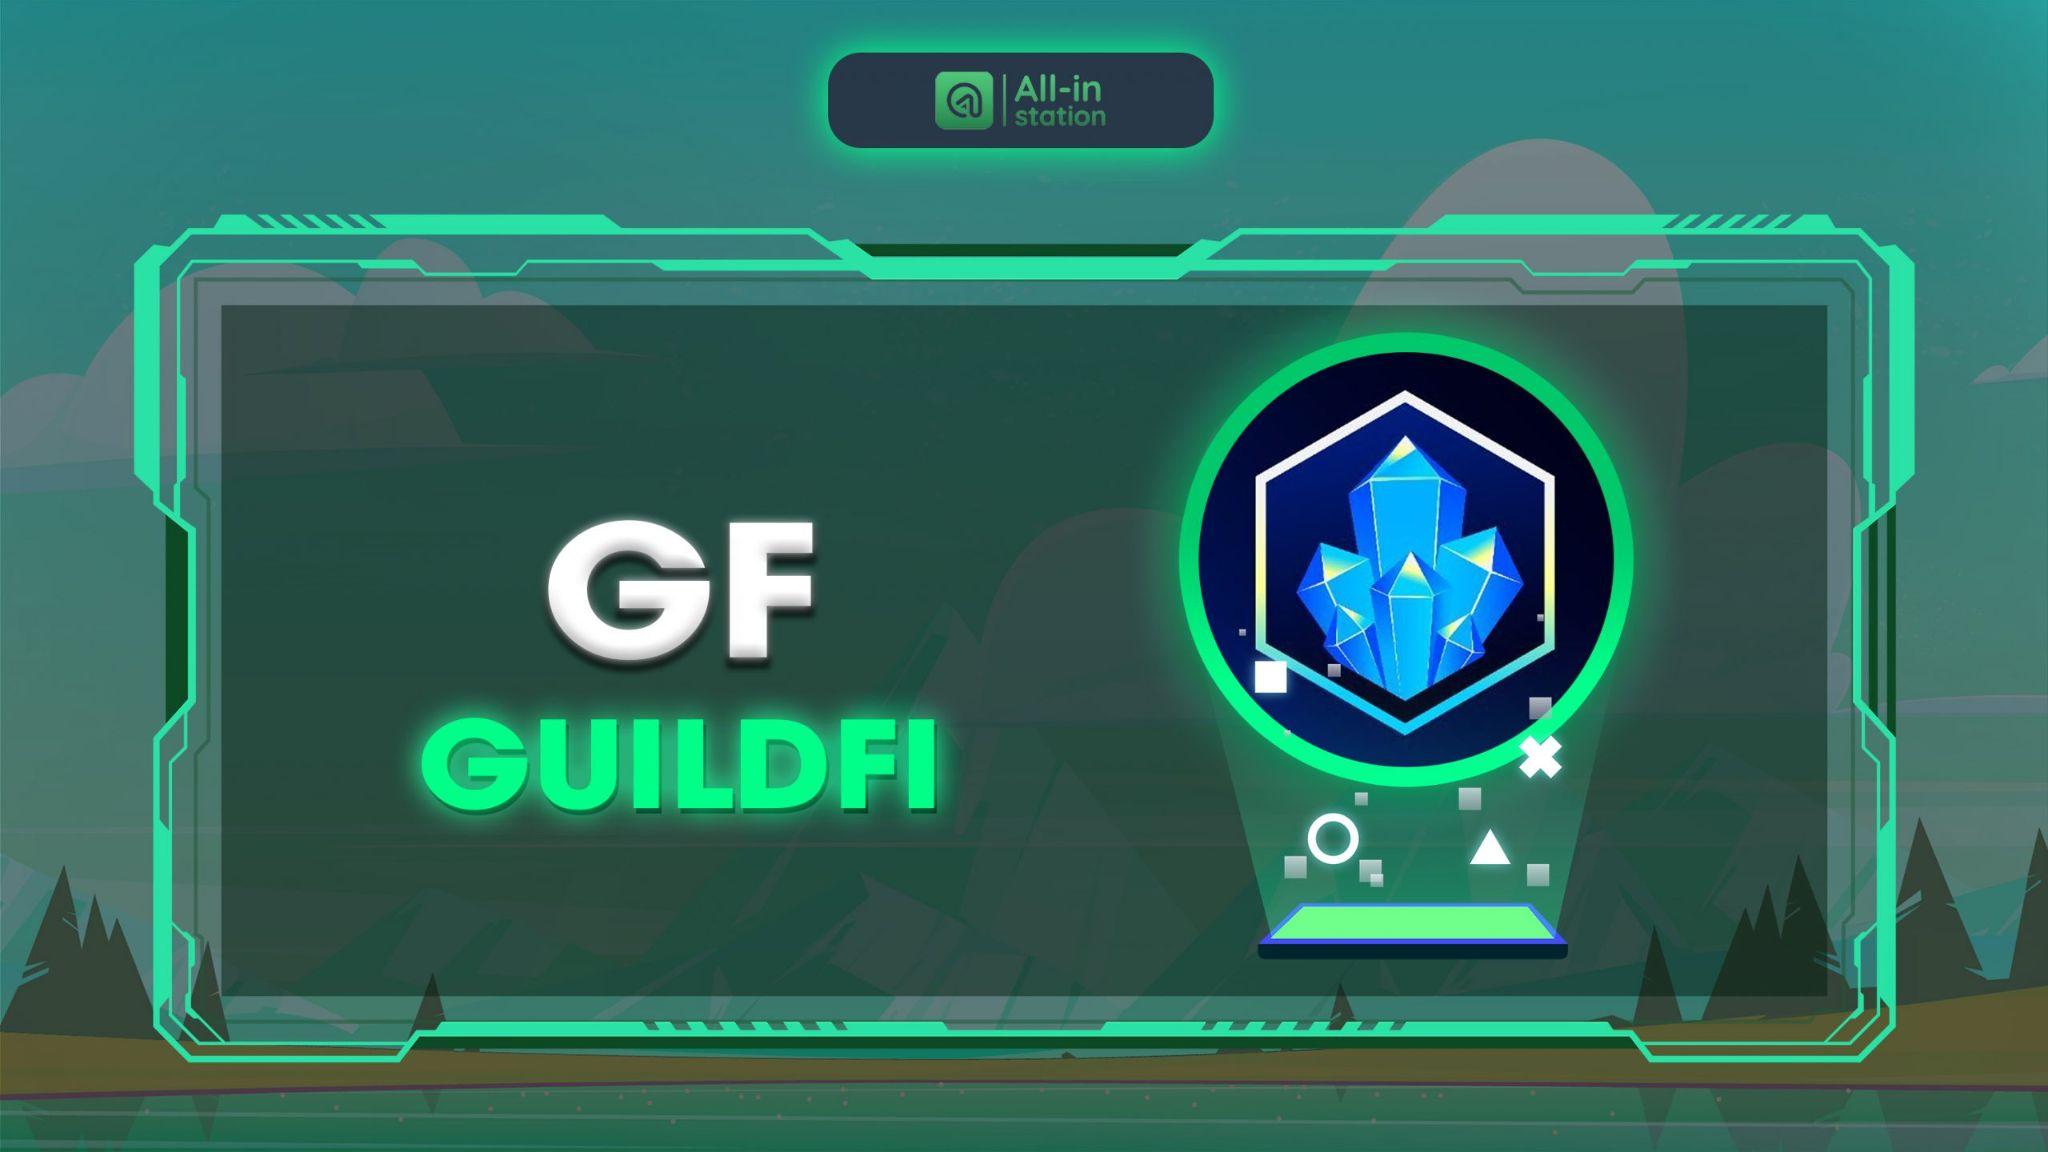 guildfi-gf-la-gi